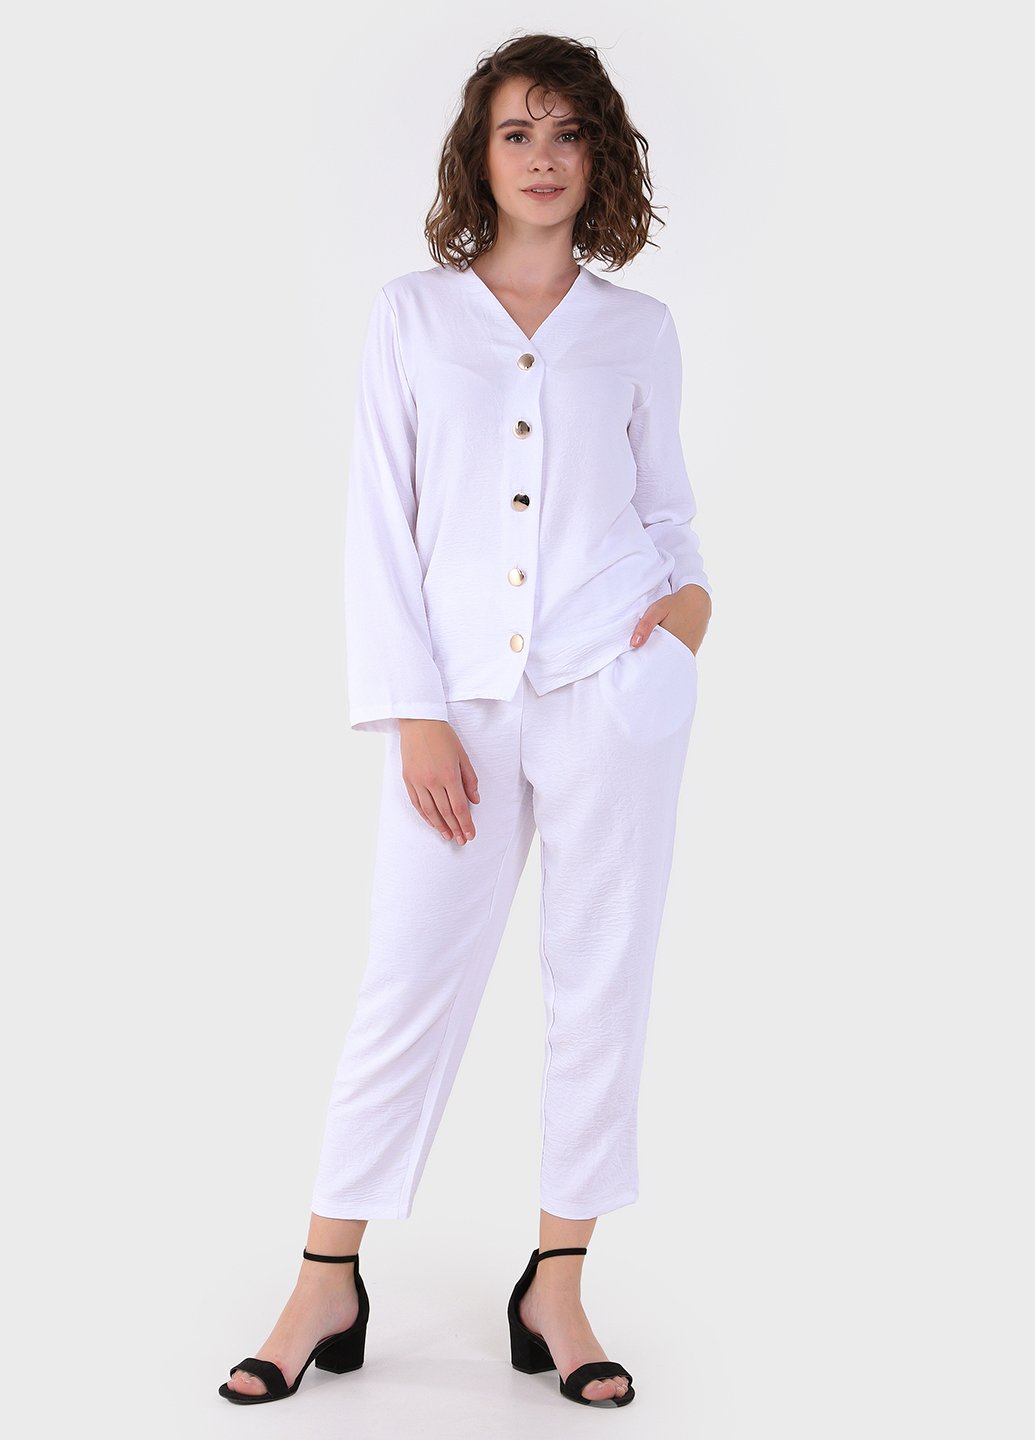 Купить Модный летний костюм женский белого цвета Merlini Двойка 100000131, размер 42-44 в интернет-магазине